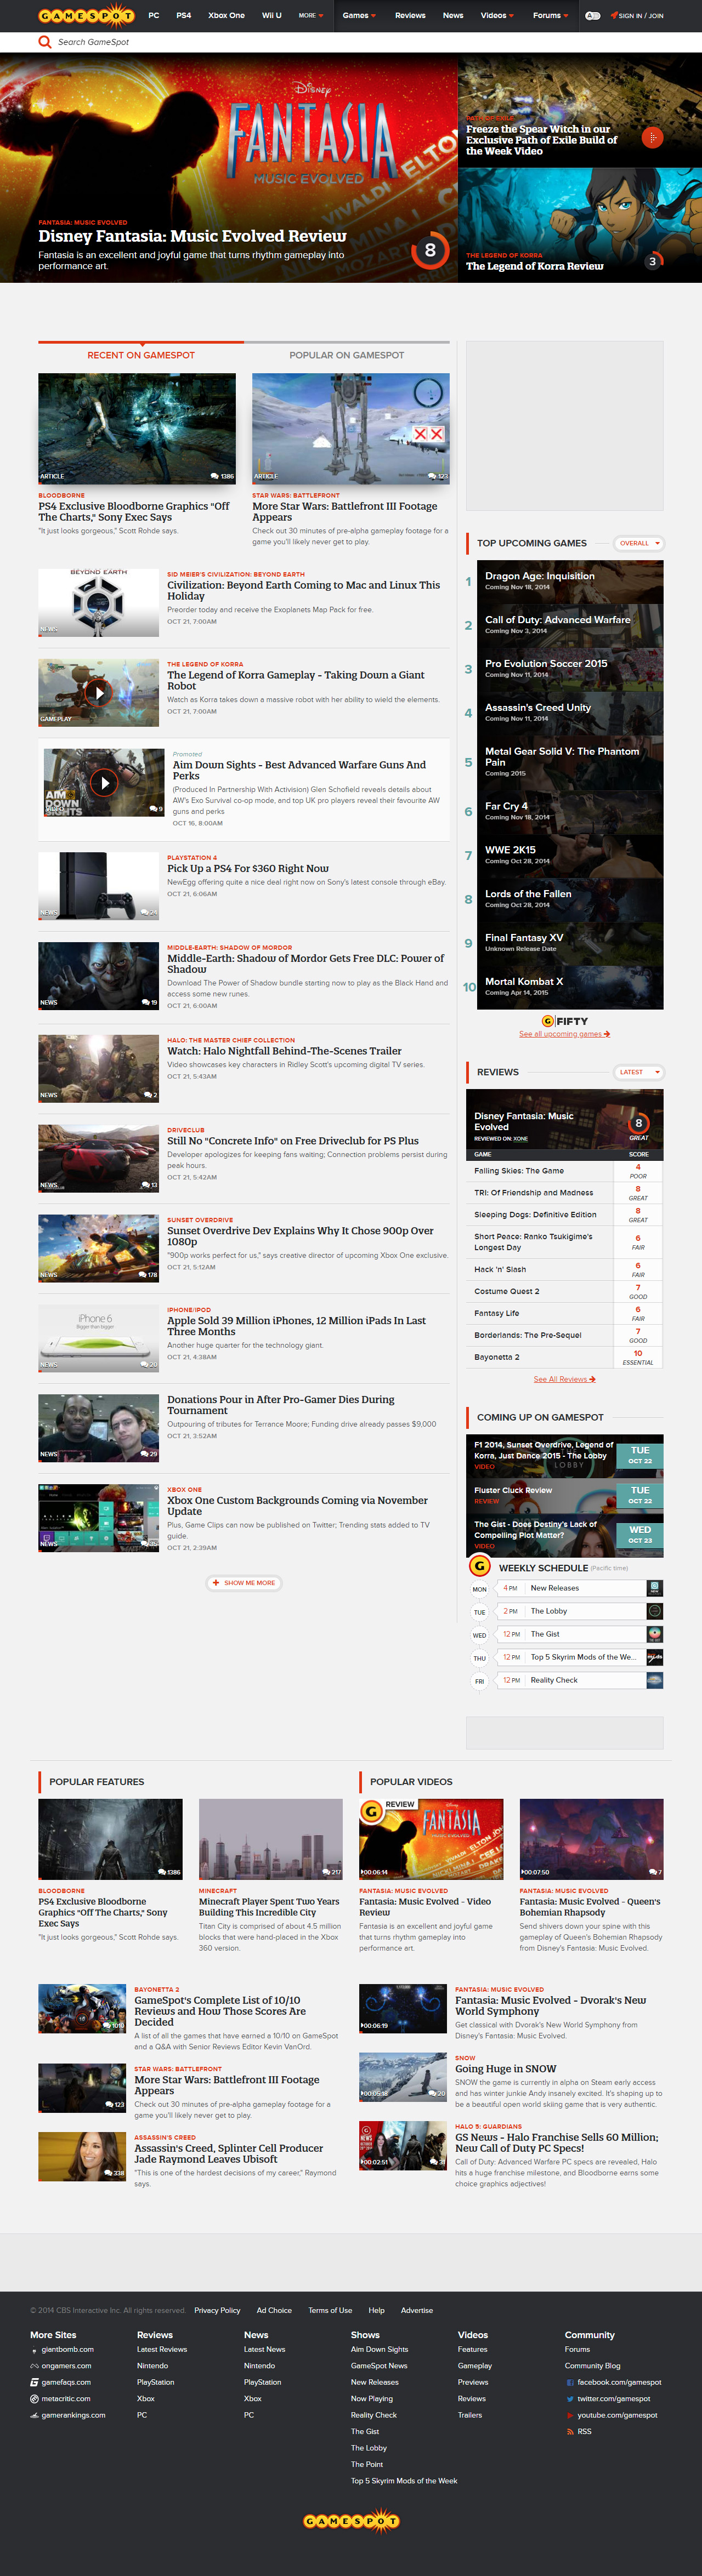 GameSpot website in 2014